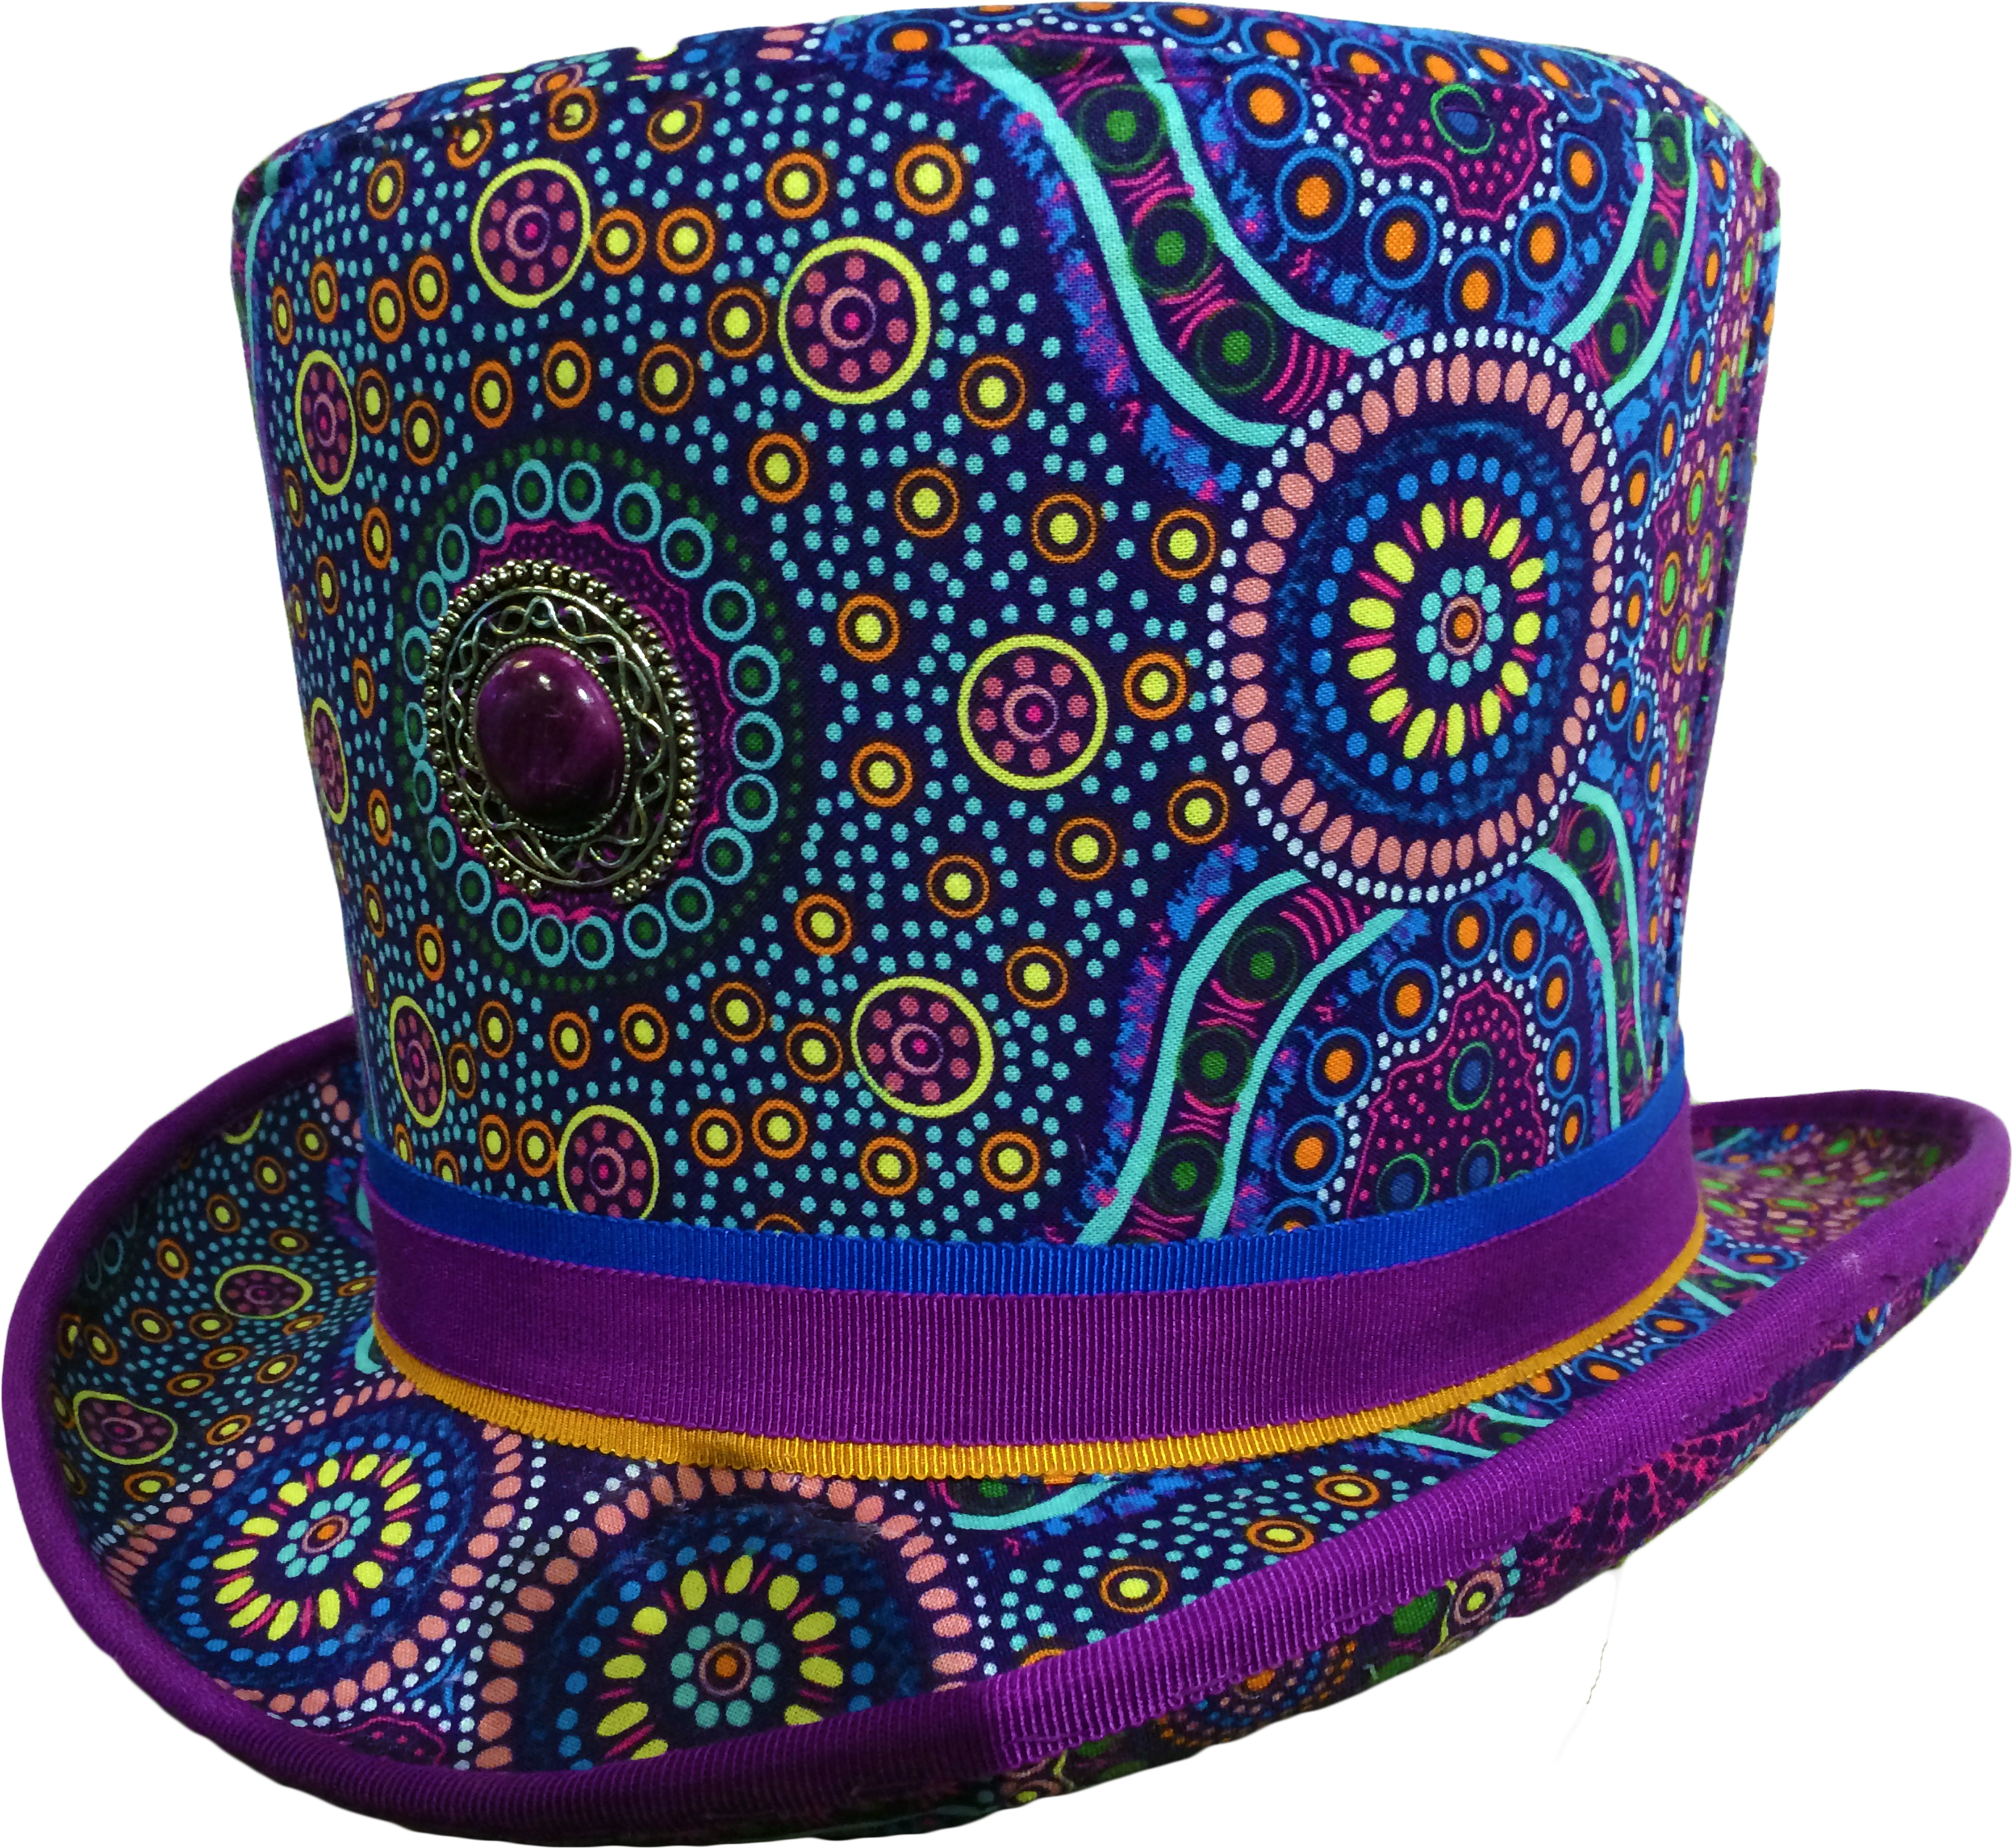 Augen hat. Разноцветные шляпы. Цилиндр (головной убор). Фиолетовая шляпа. Узоры на шляпе.